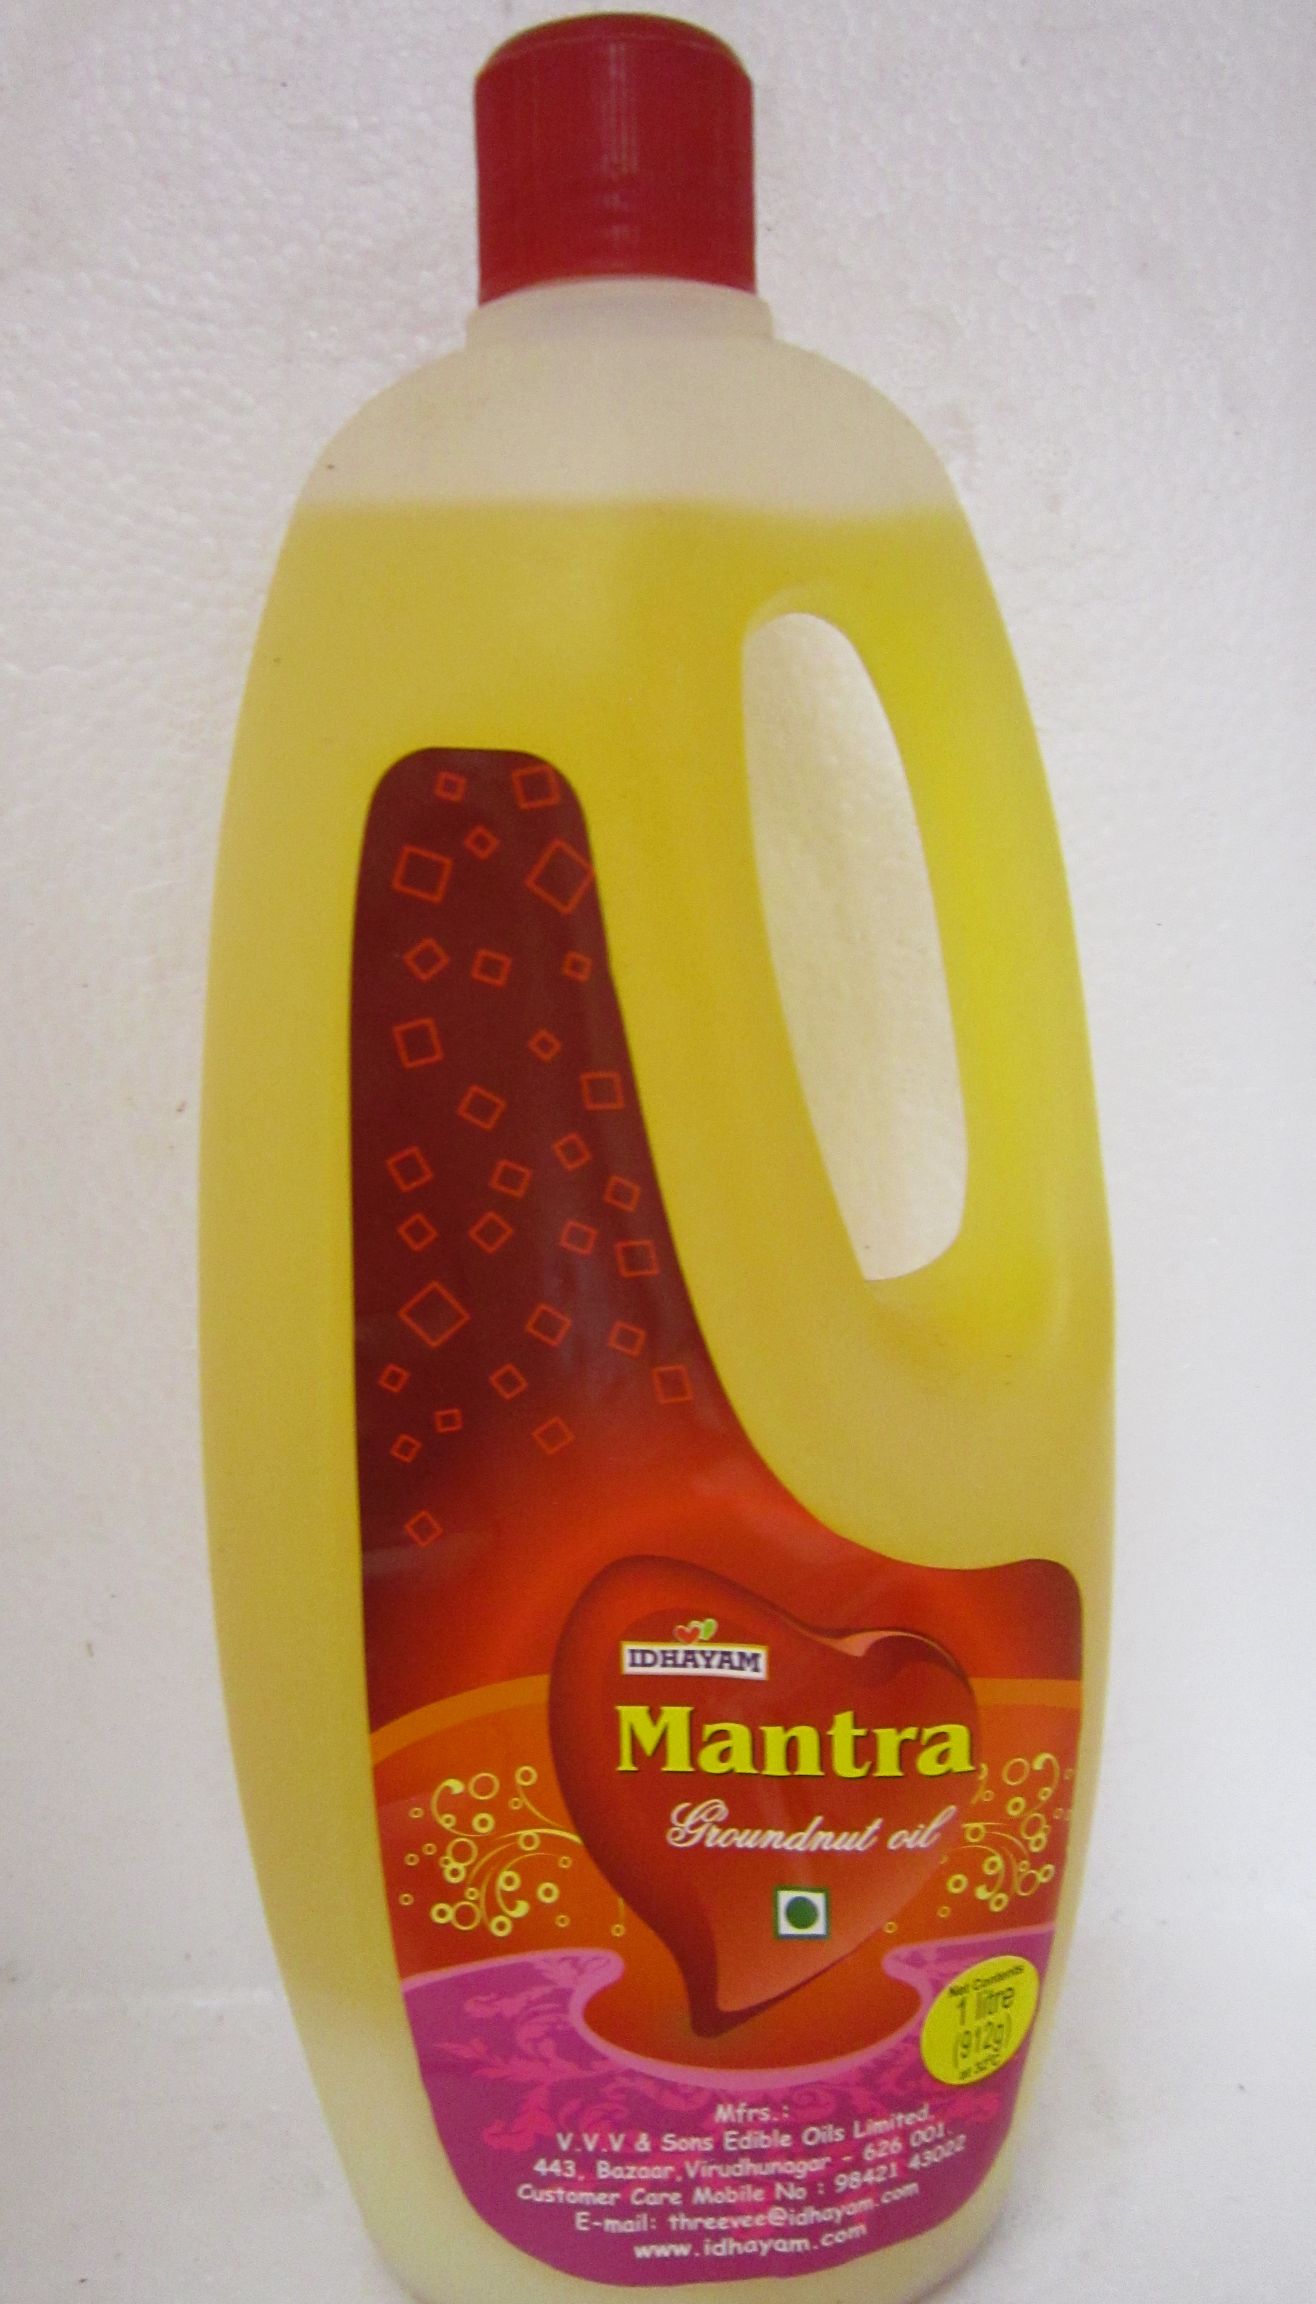 Idhayam Mantra Groundnut Oil Image